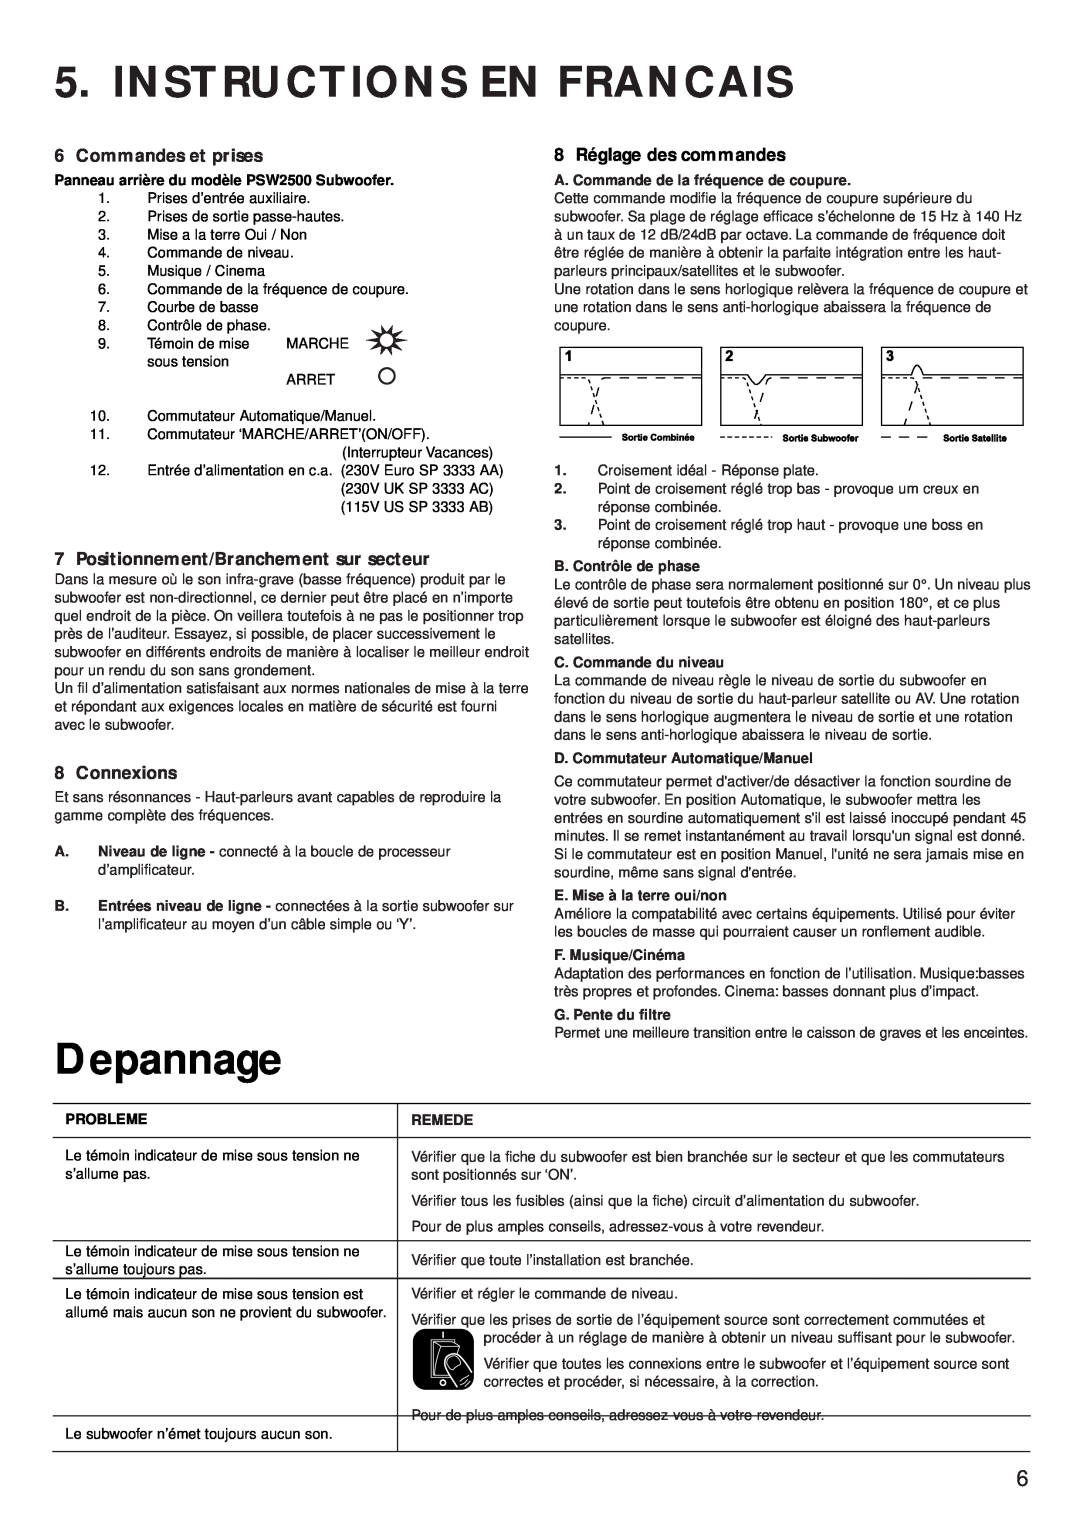 KEF Audio PSW 2500 Instructions En Francais, Depannage, Commandes et prises, 8 Réglage des commandes, Connexions, Probleme 